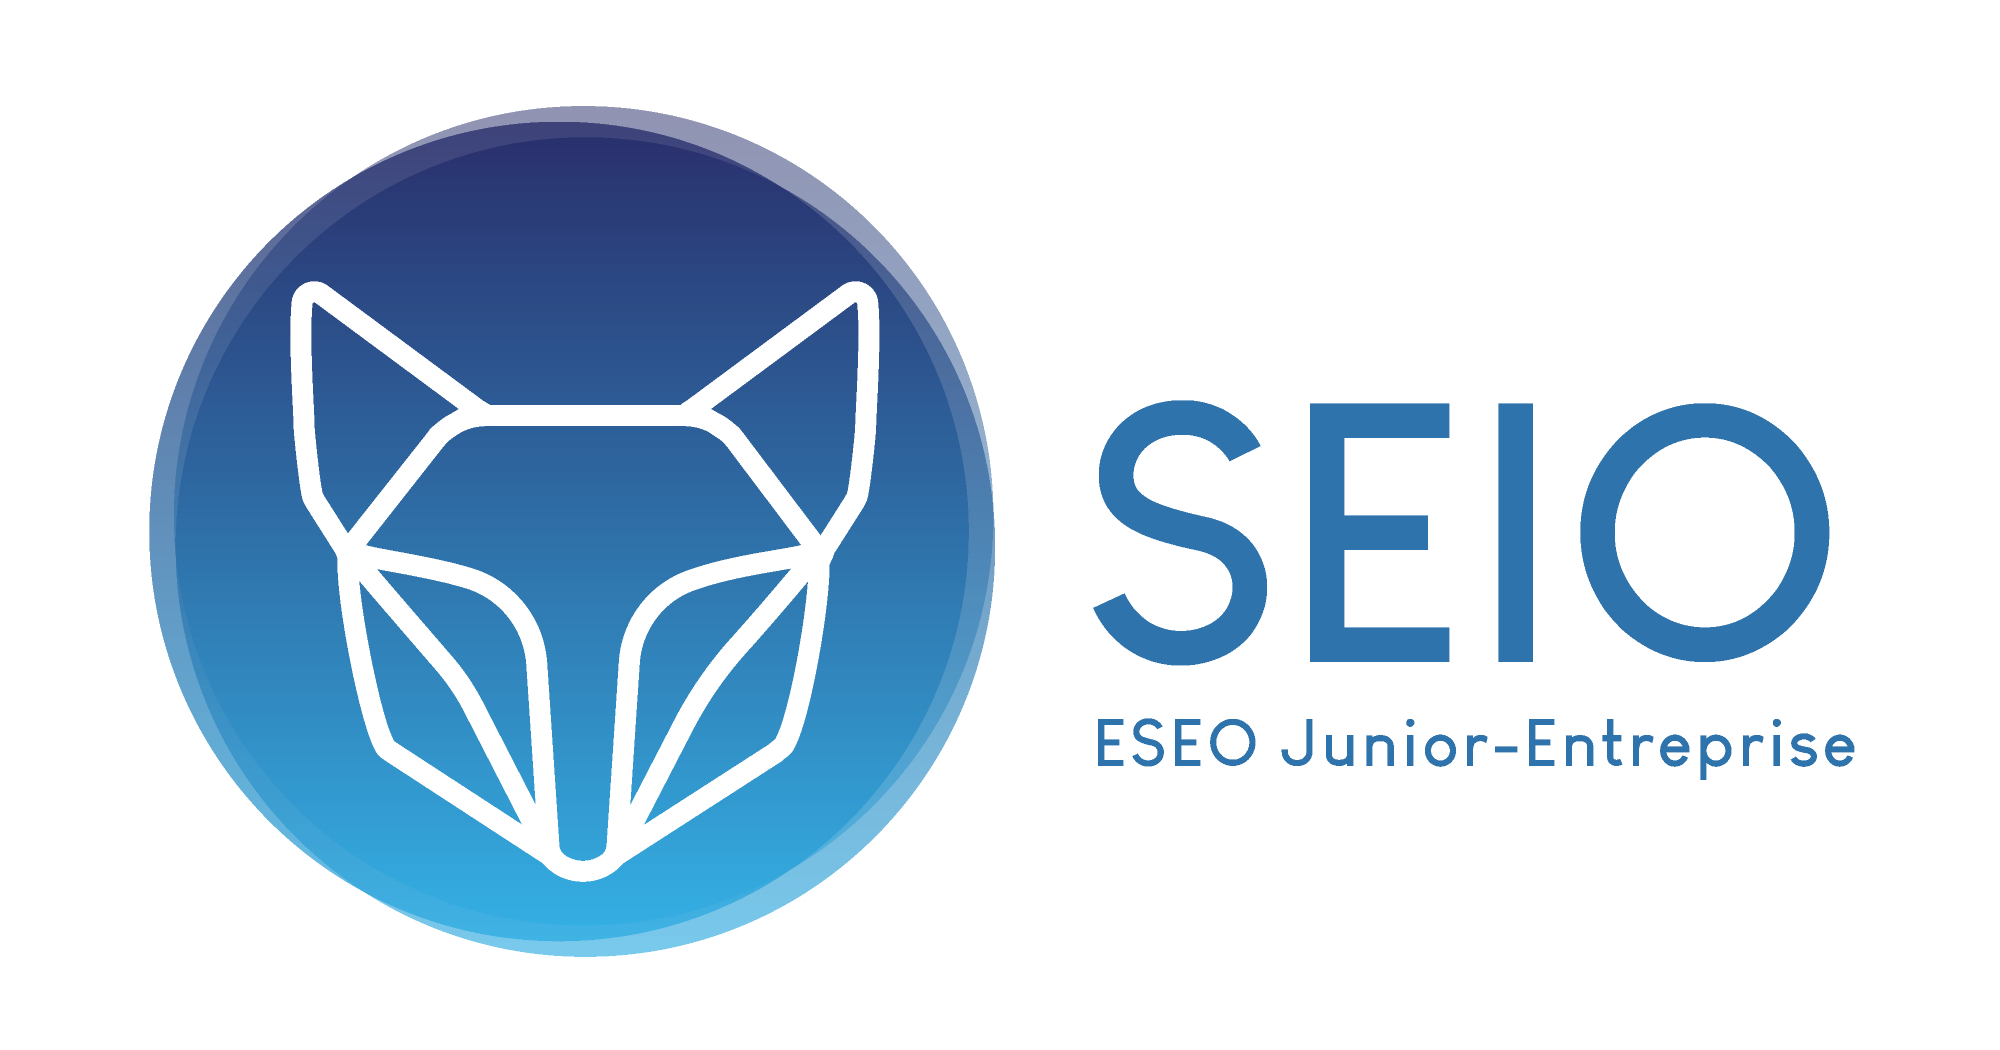 Junior-Entreprise ESEO : SEIO